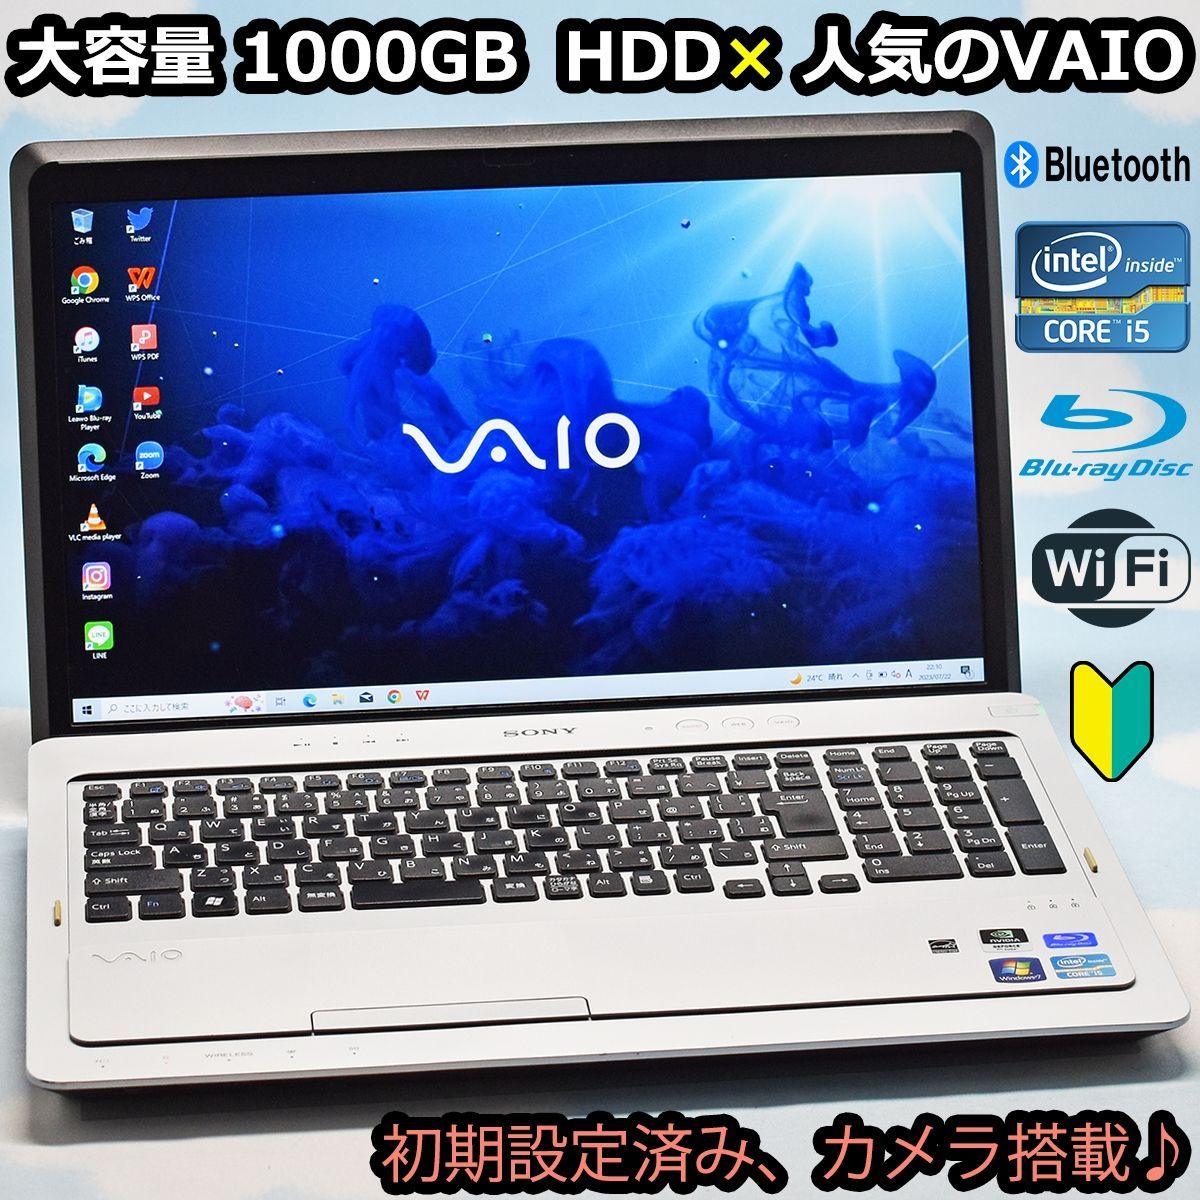 人気のVAIO Corei5 超大容量 1TB HDD、Bluetooth、カメラ、マイク